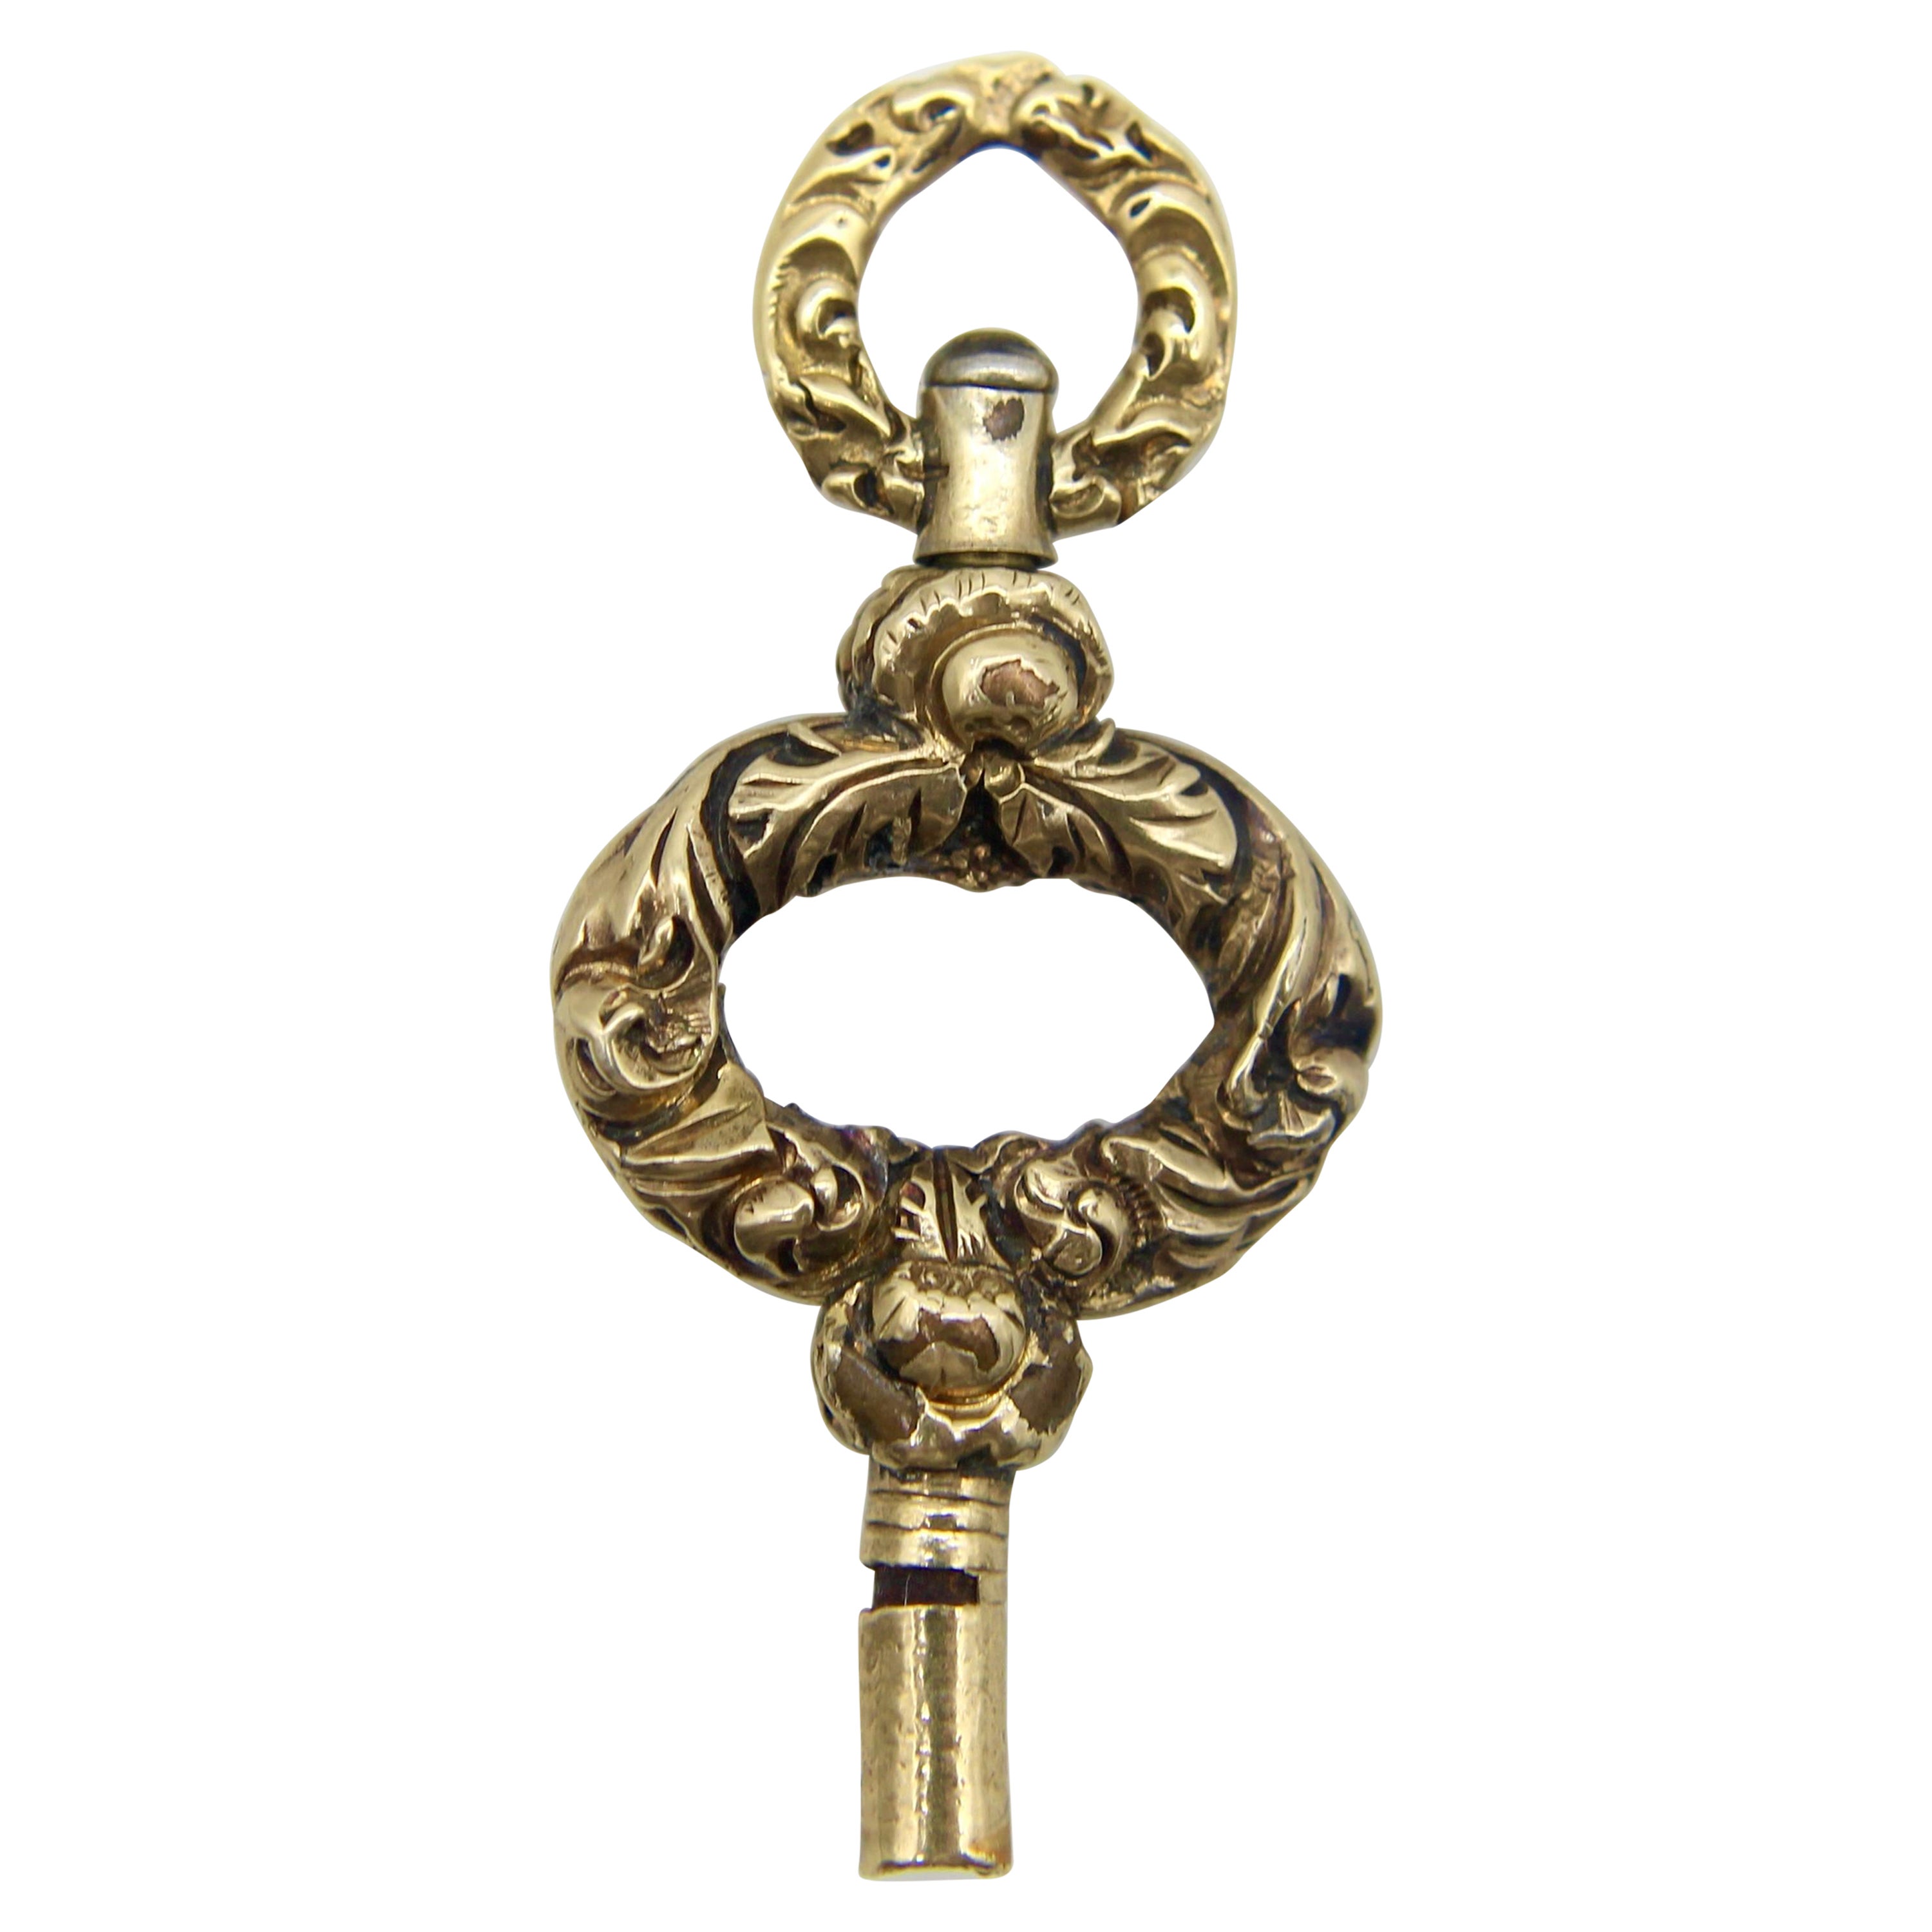 Schlüsselanhänger mit Goldgehäuse aus der georgischen Epoche, um 1820